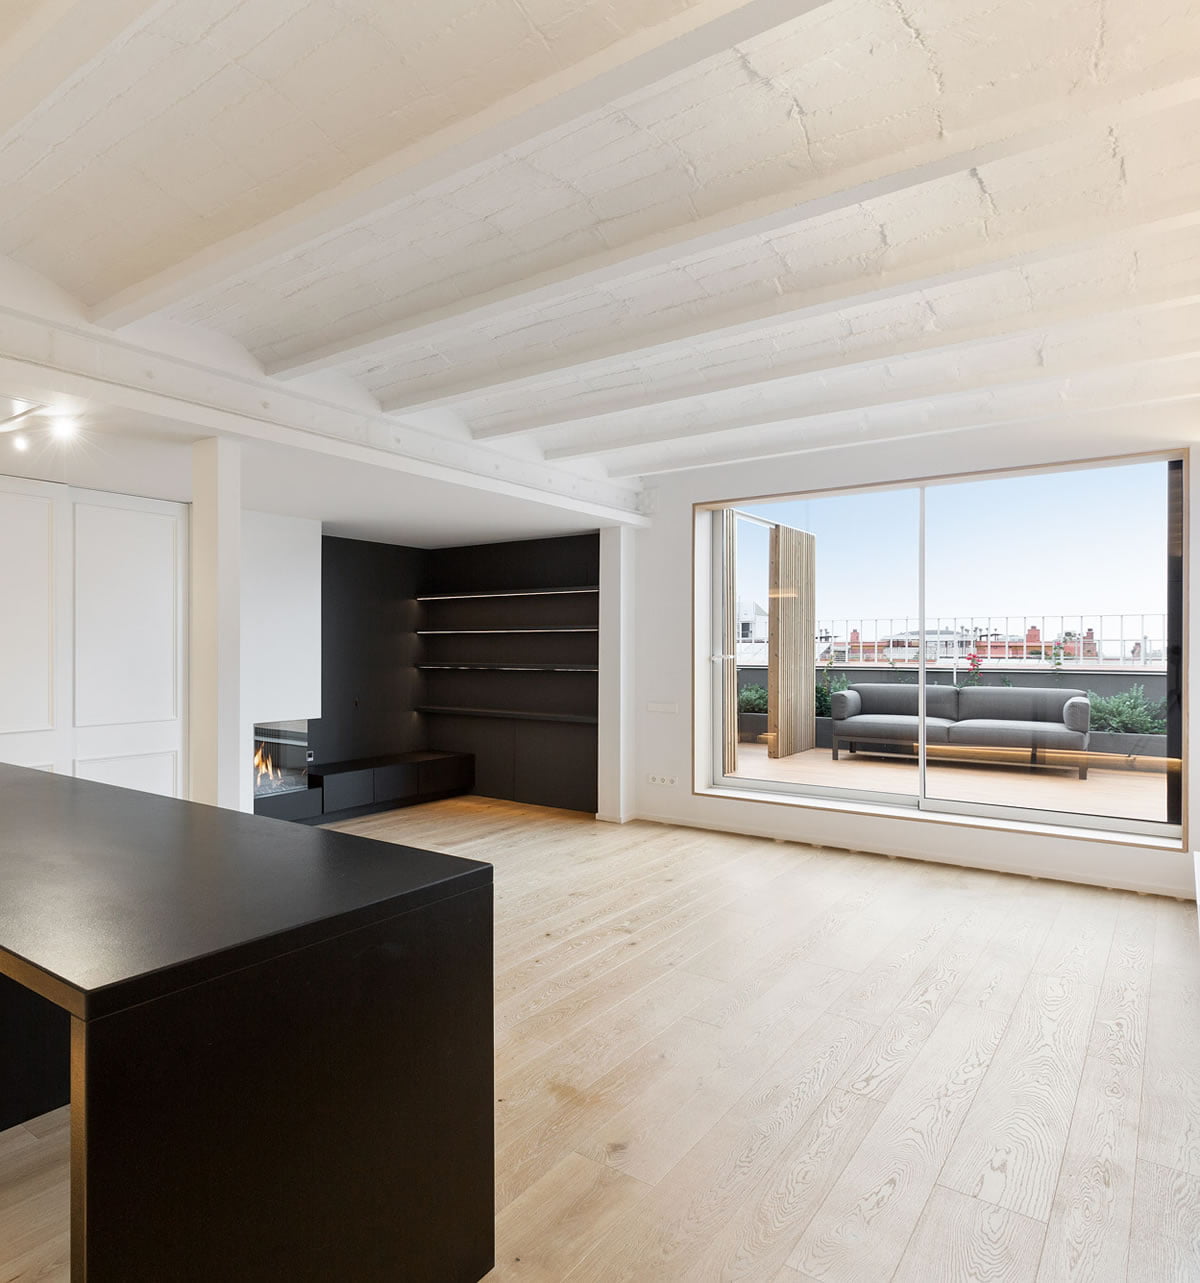 Ventajas de reformar una vivienda frente a comprar una nueva en Barcelona